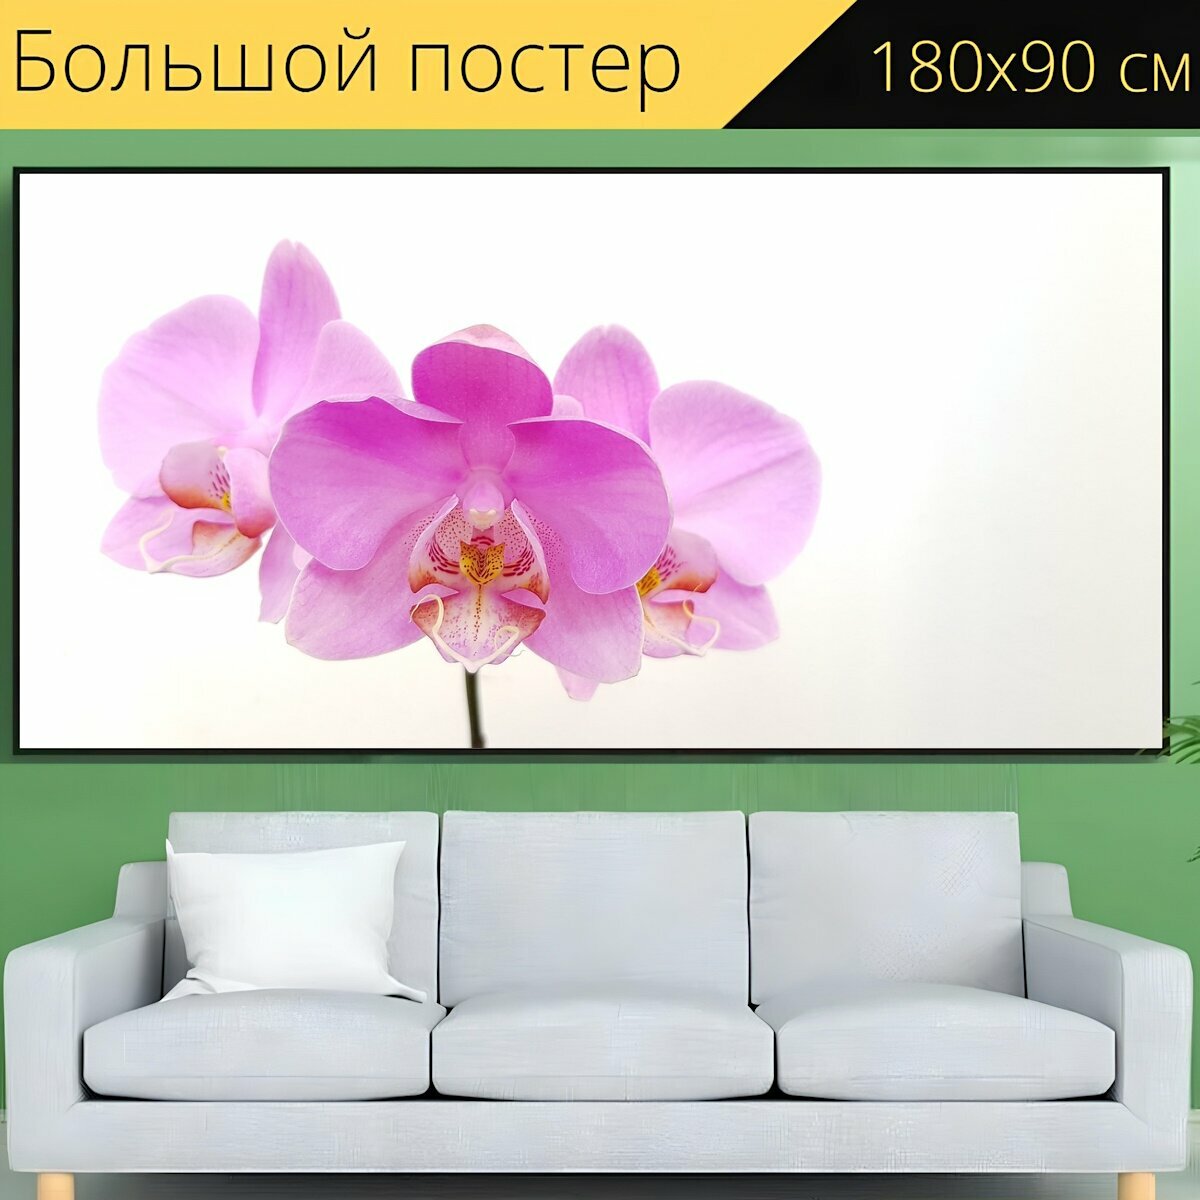 Большой постер "Цветок, орхидея, розовый" 180 x 90 см. для интерьера